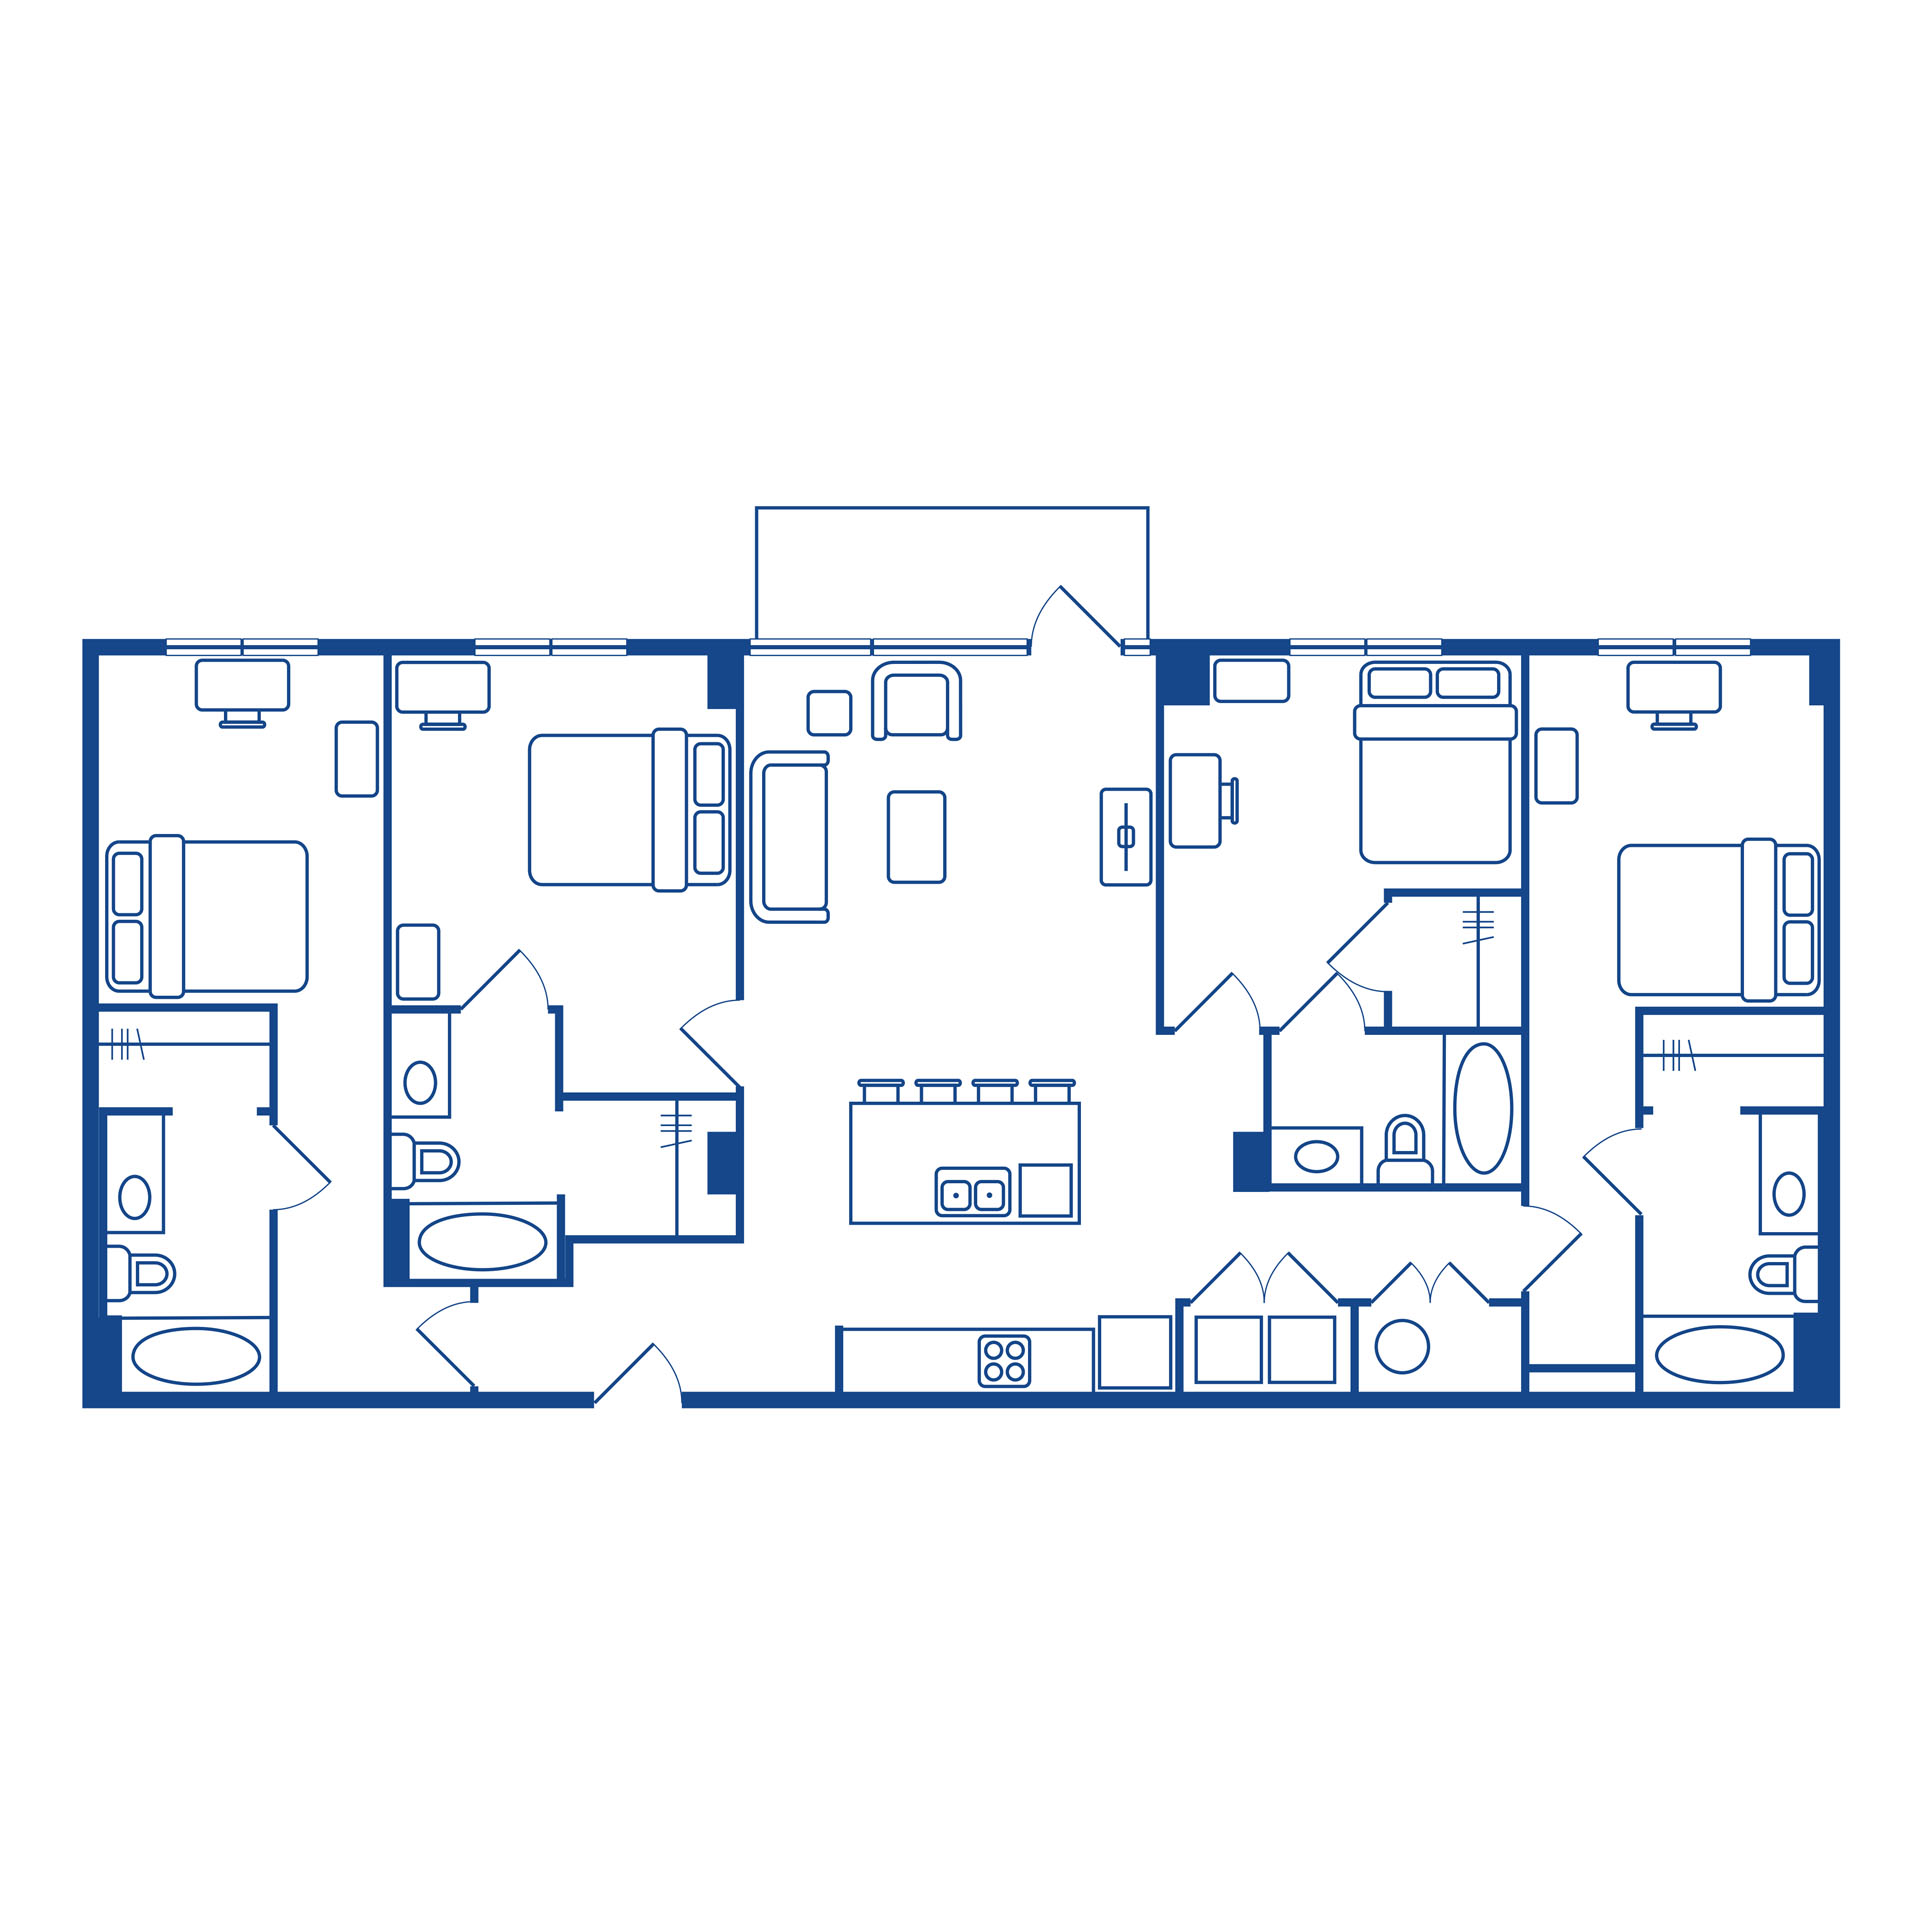 4 bedroom / 4 bath balcony tower floor plan 